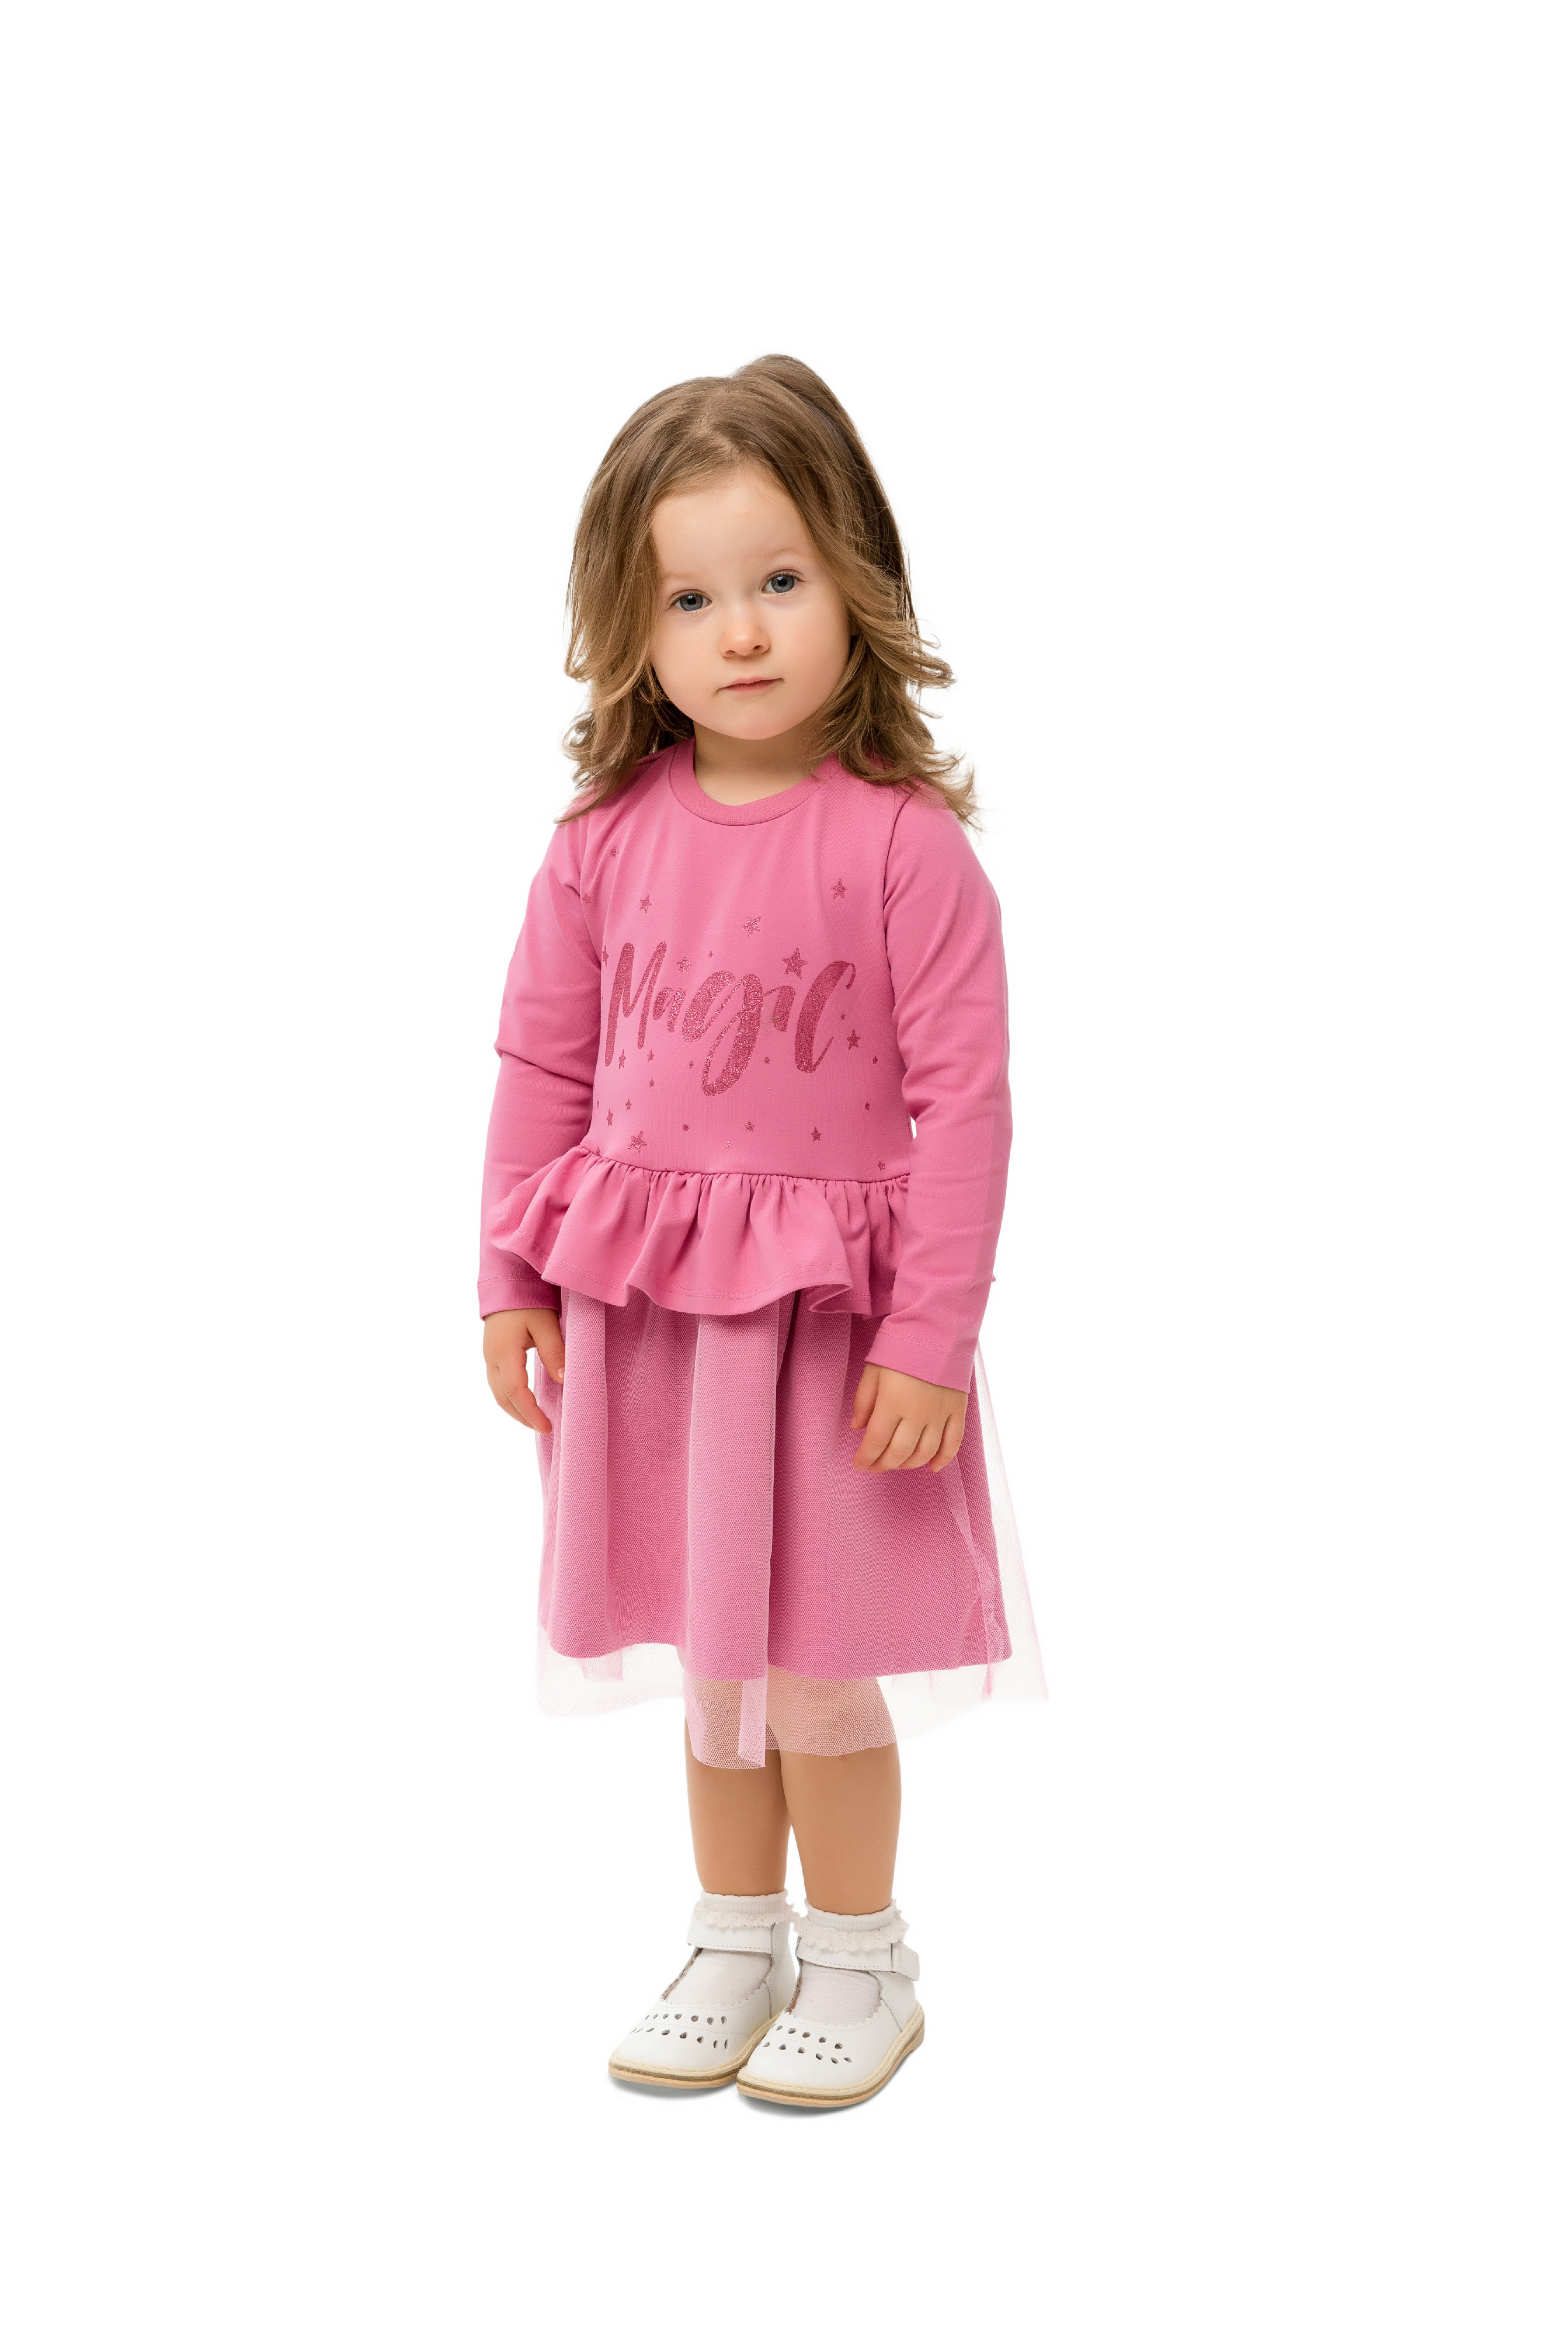 Dívčí šaty - WINKIKI WKG 92555, růžová Barva: Růžová, Velikost: 104